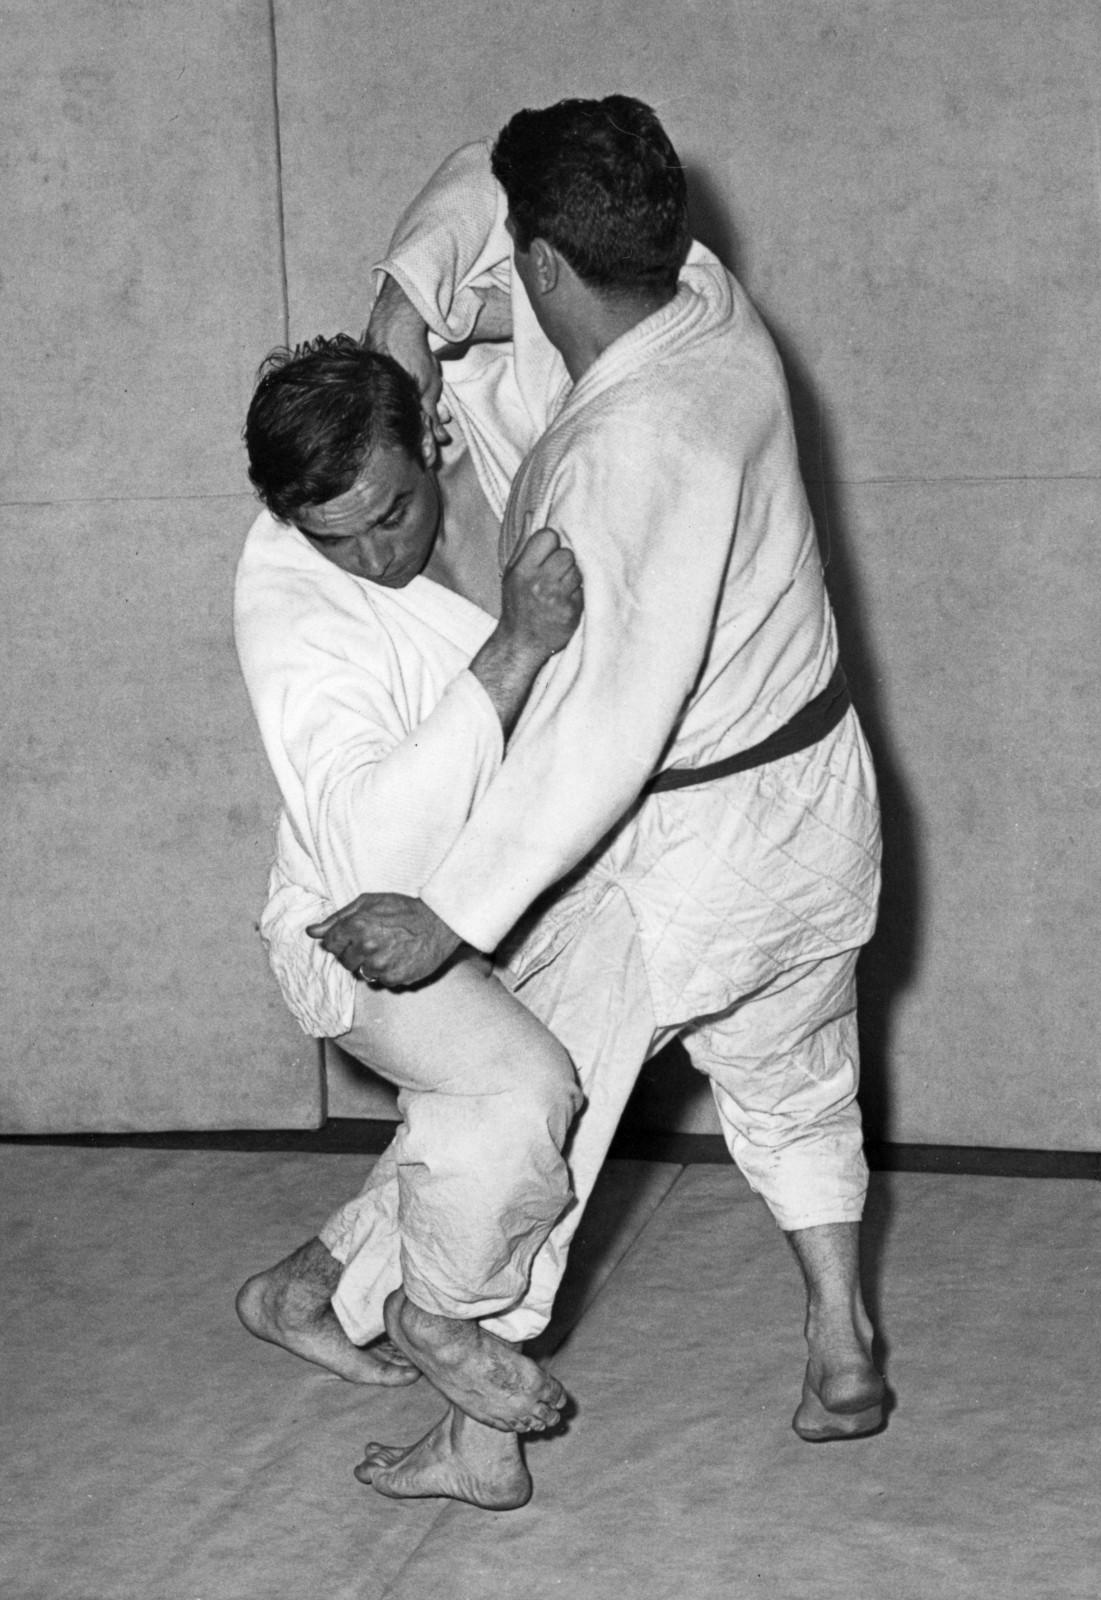 Démonstration d'une prise de judo